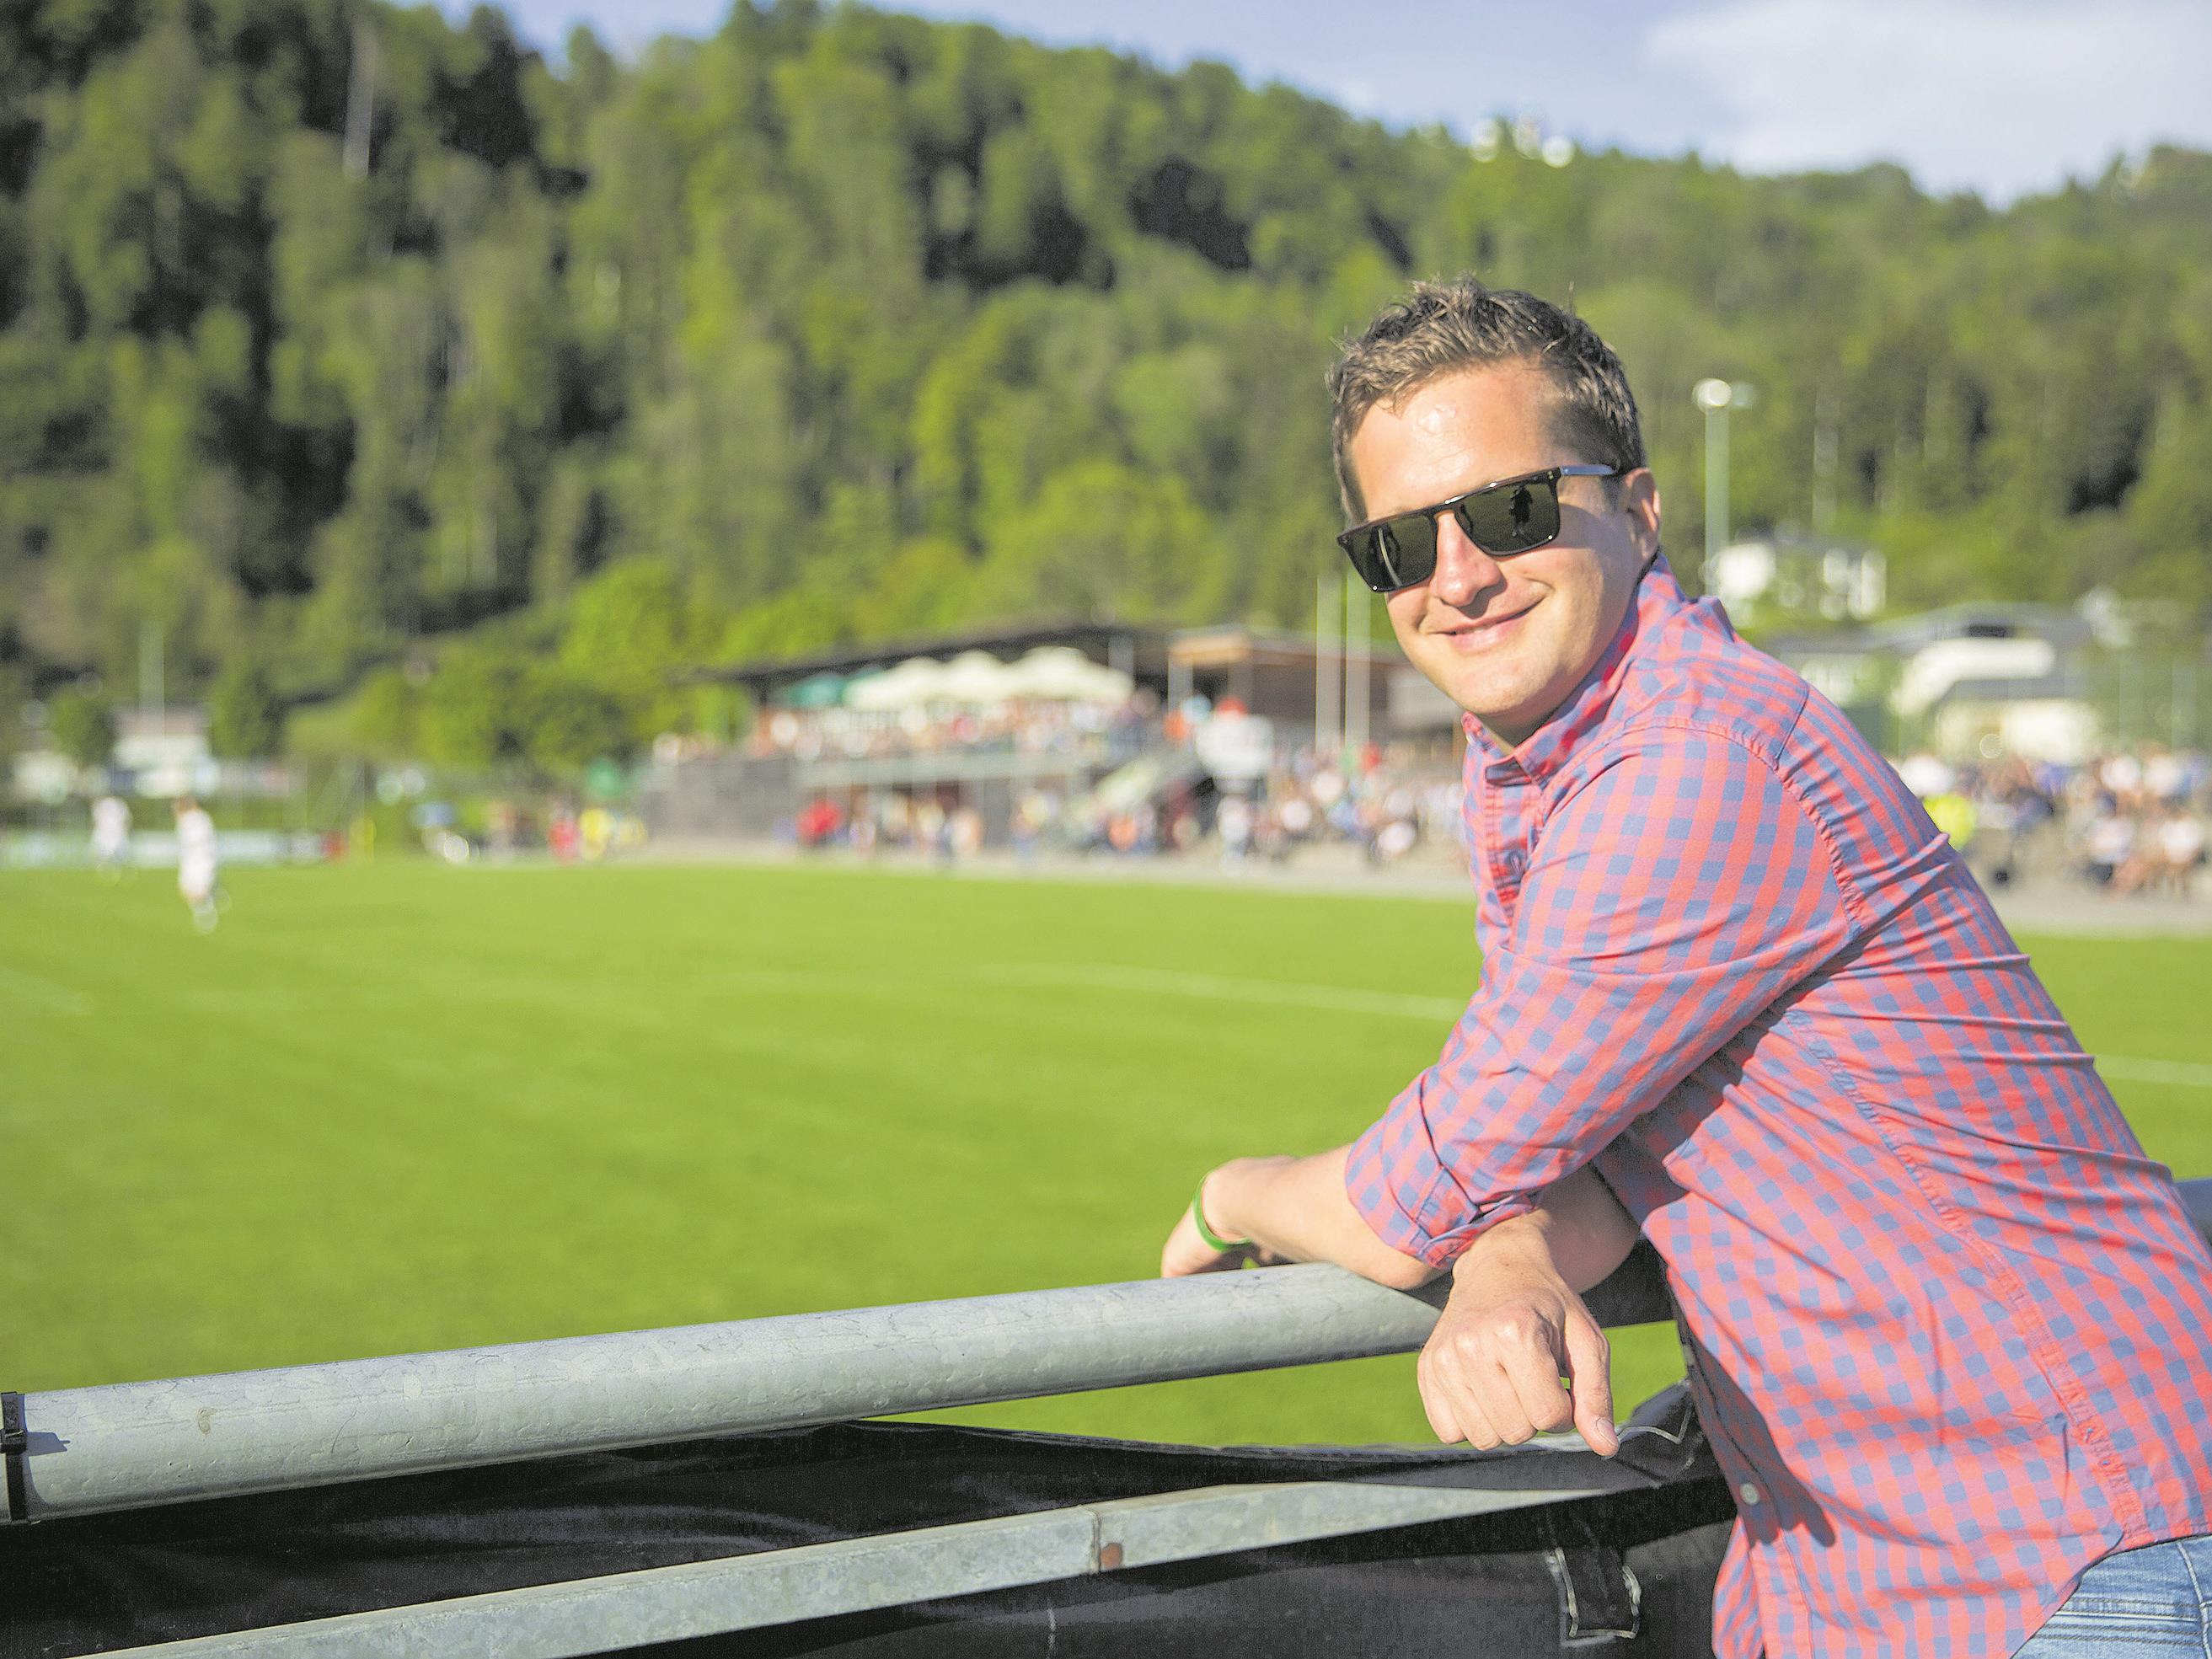 Sport-Kommentator Oliver Polzer im Wann und Wo Interview.